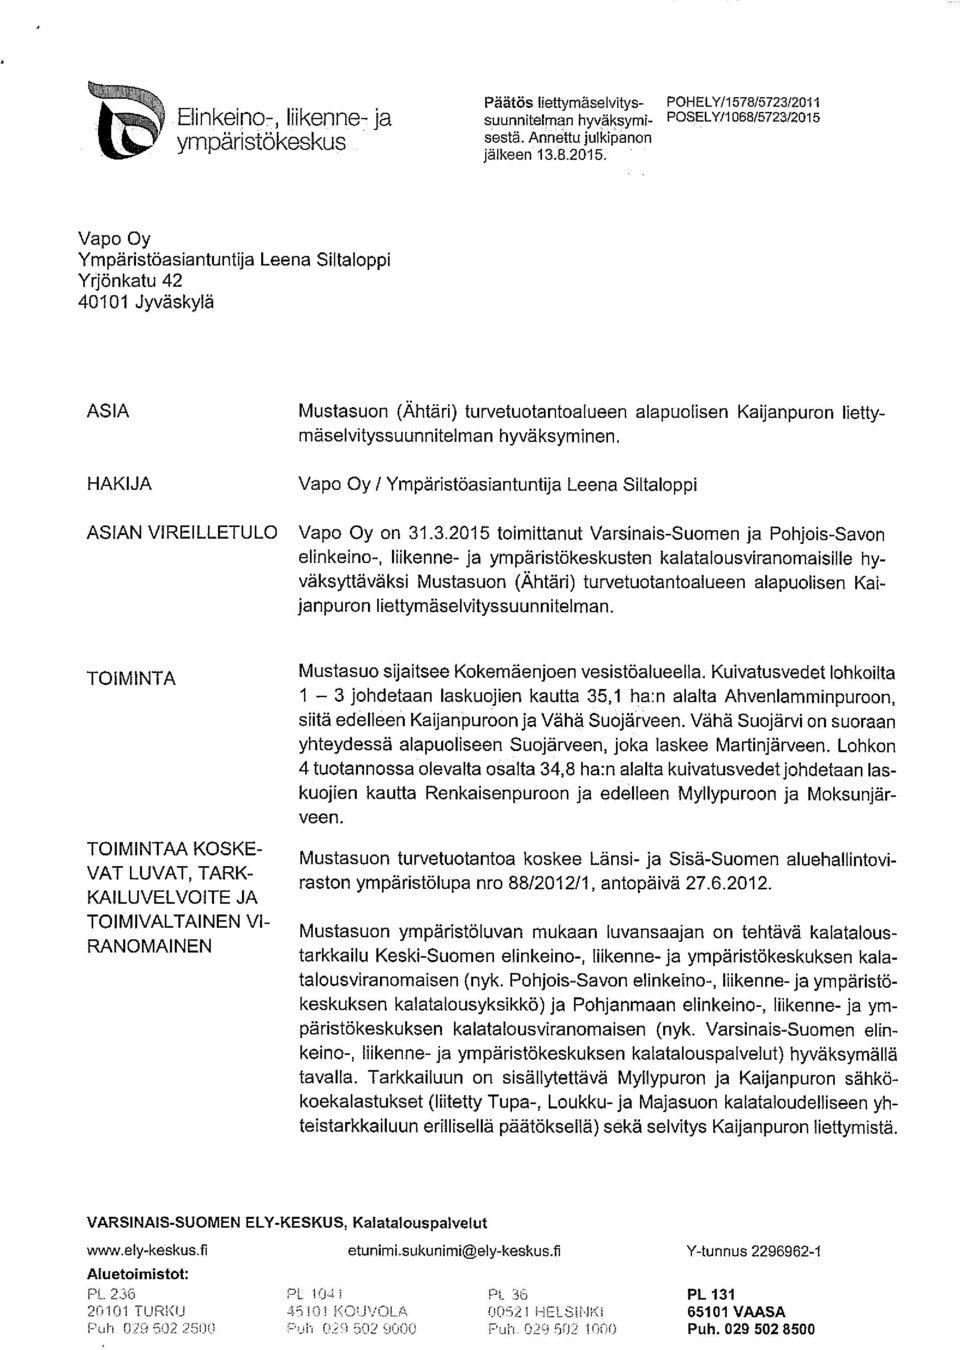 Vapo Oy / Ympäristöasiantuntija Leena Siltaloppi Vapo Oy on 31